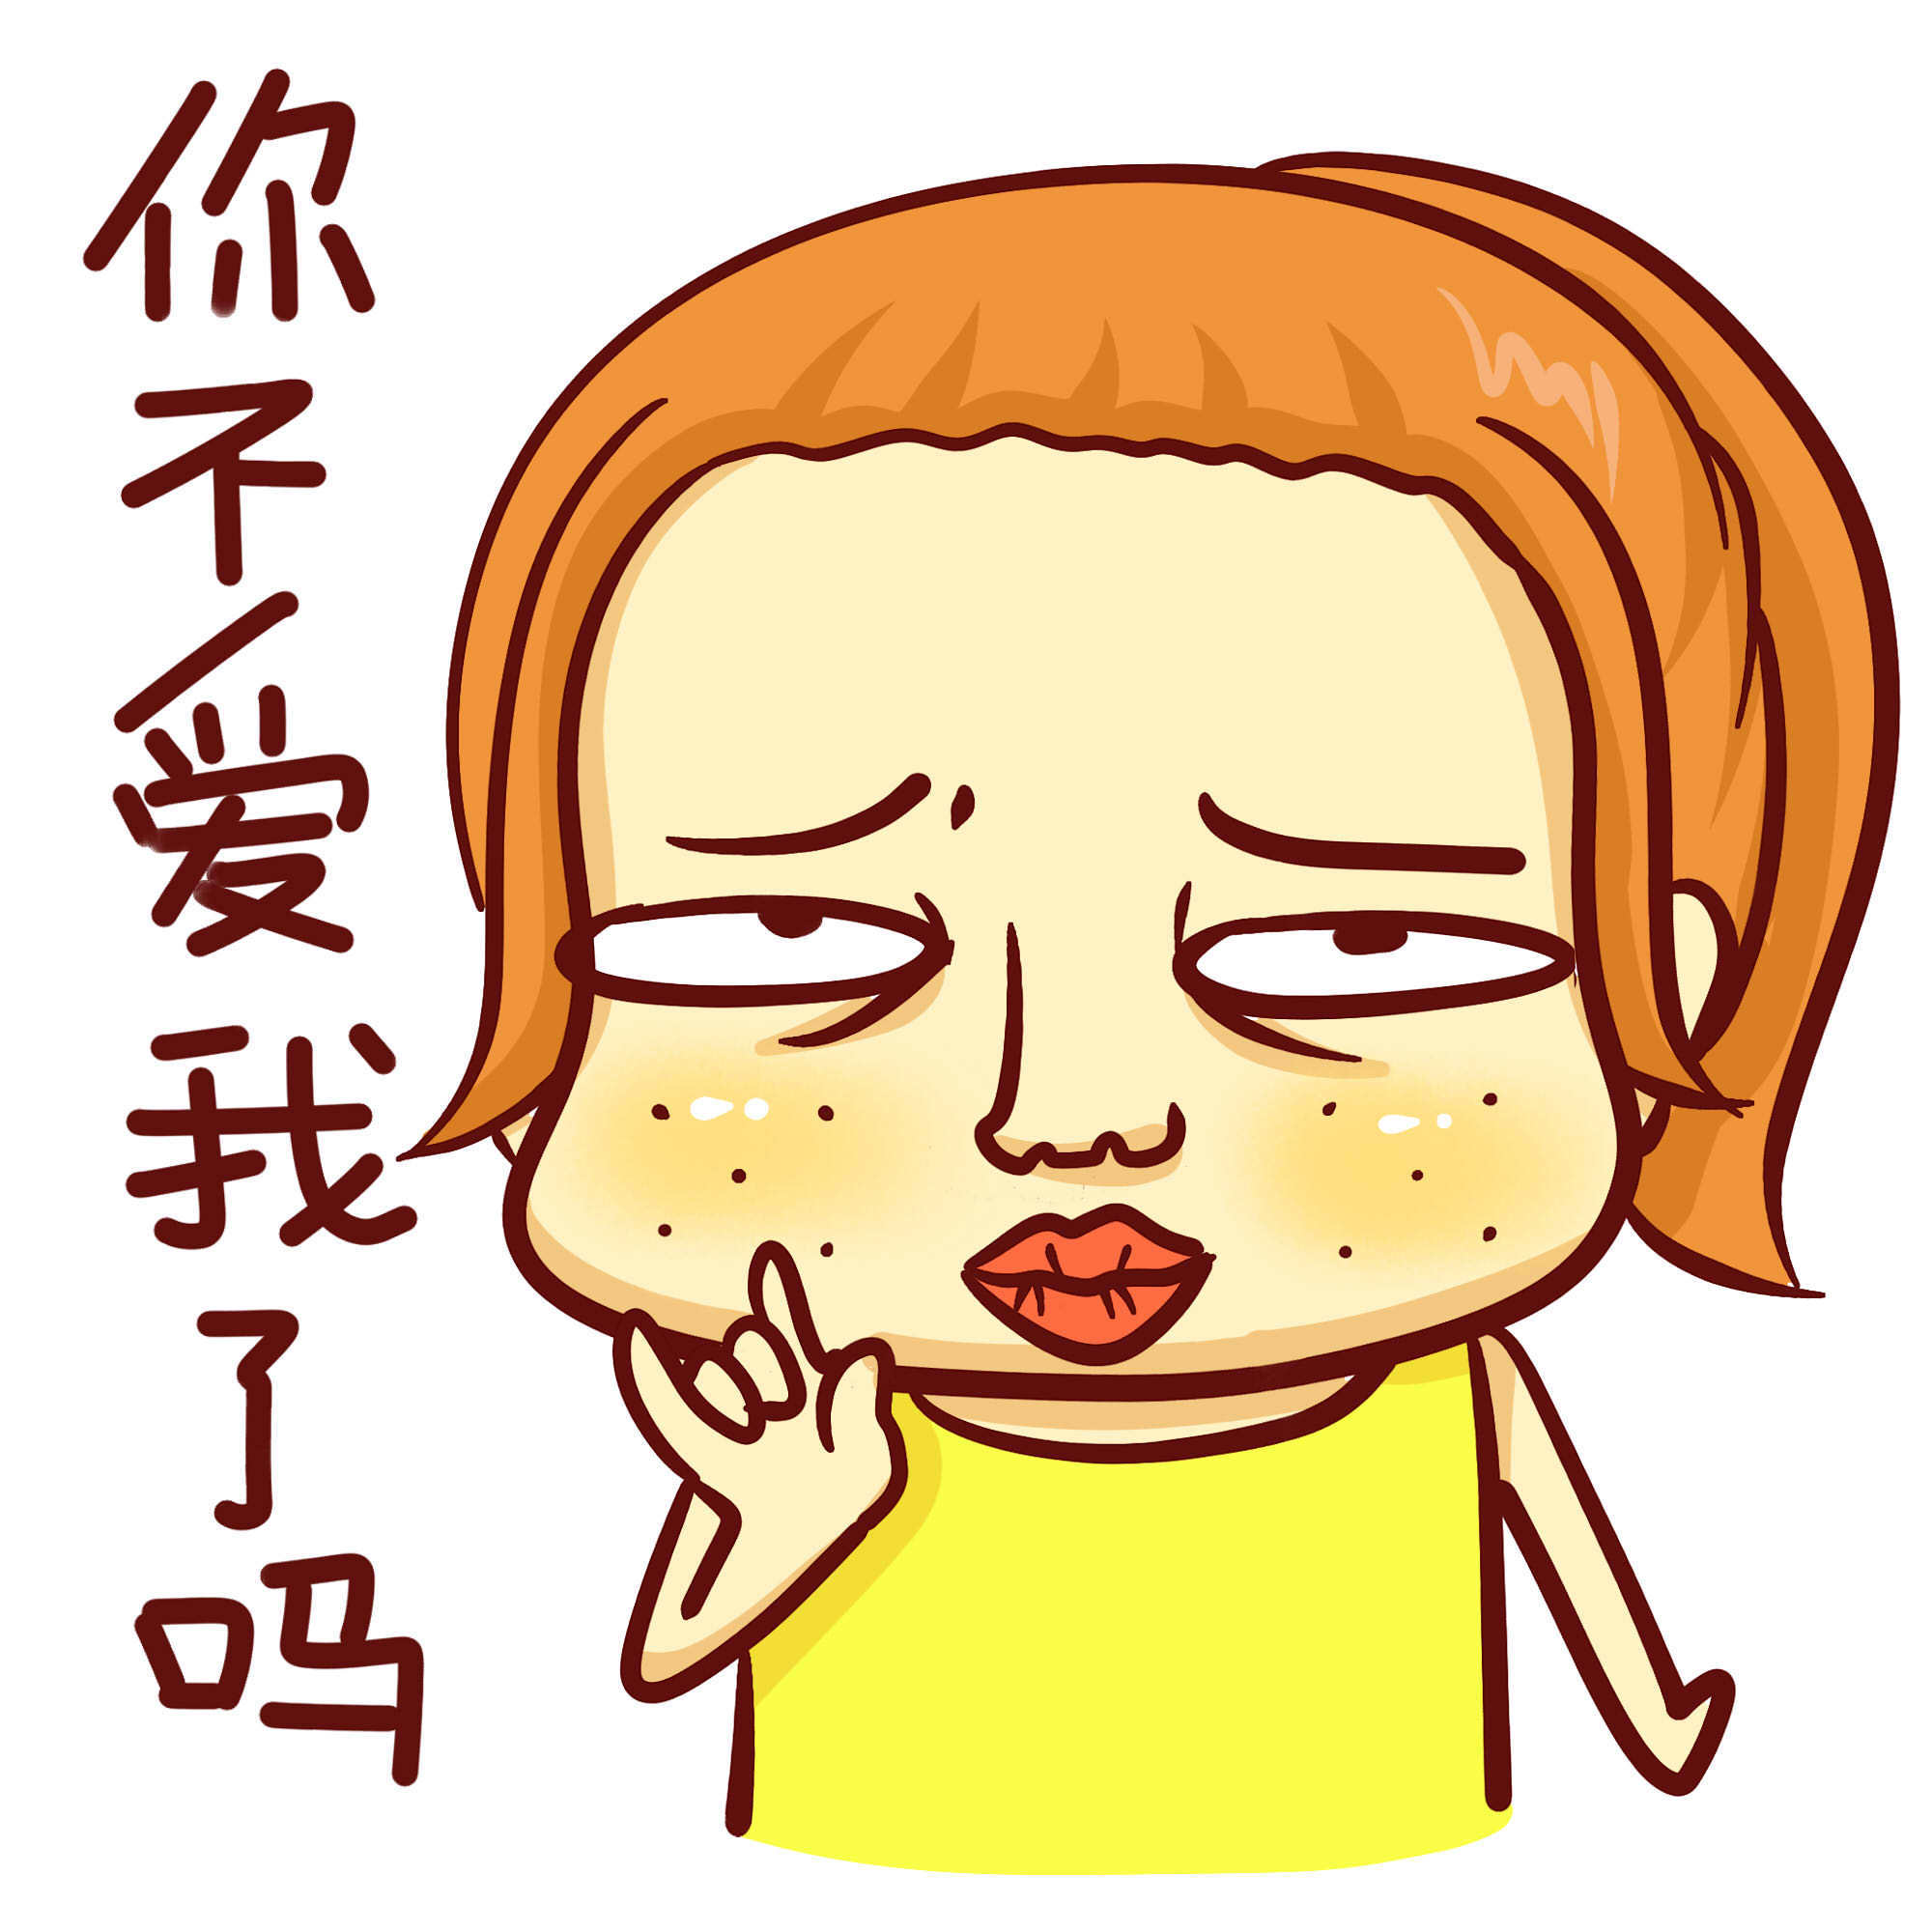 东西少，母亲说我不爱吃 - 斗图大会 - 母亲节、母亲、母爱表情库 - 真正的斗图网站 - dou.yuanmazg.com